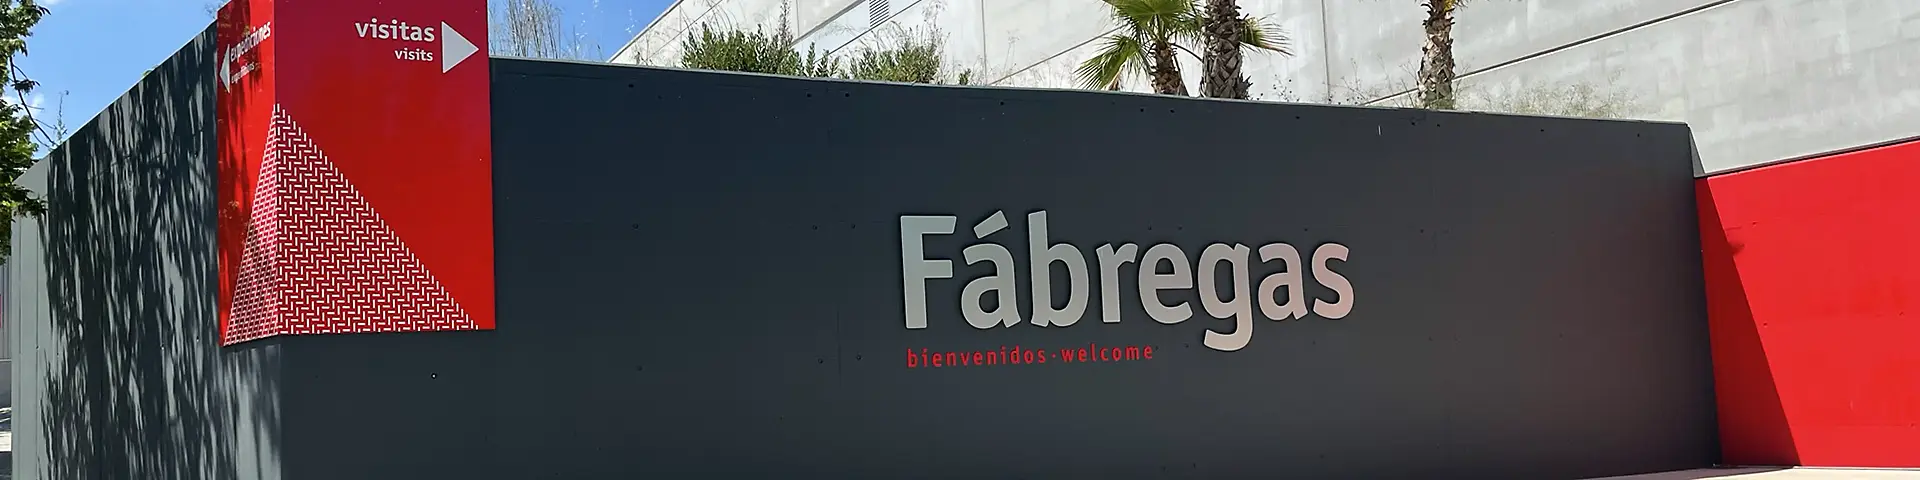 Contactar Fundición Ductil Fábregas - Parques y jardines